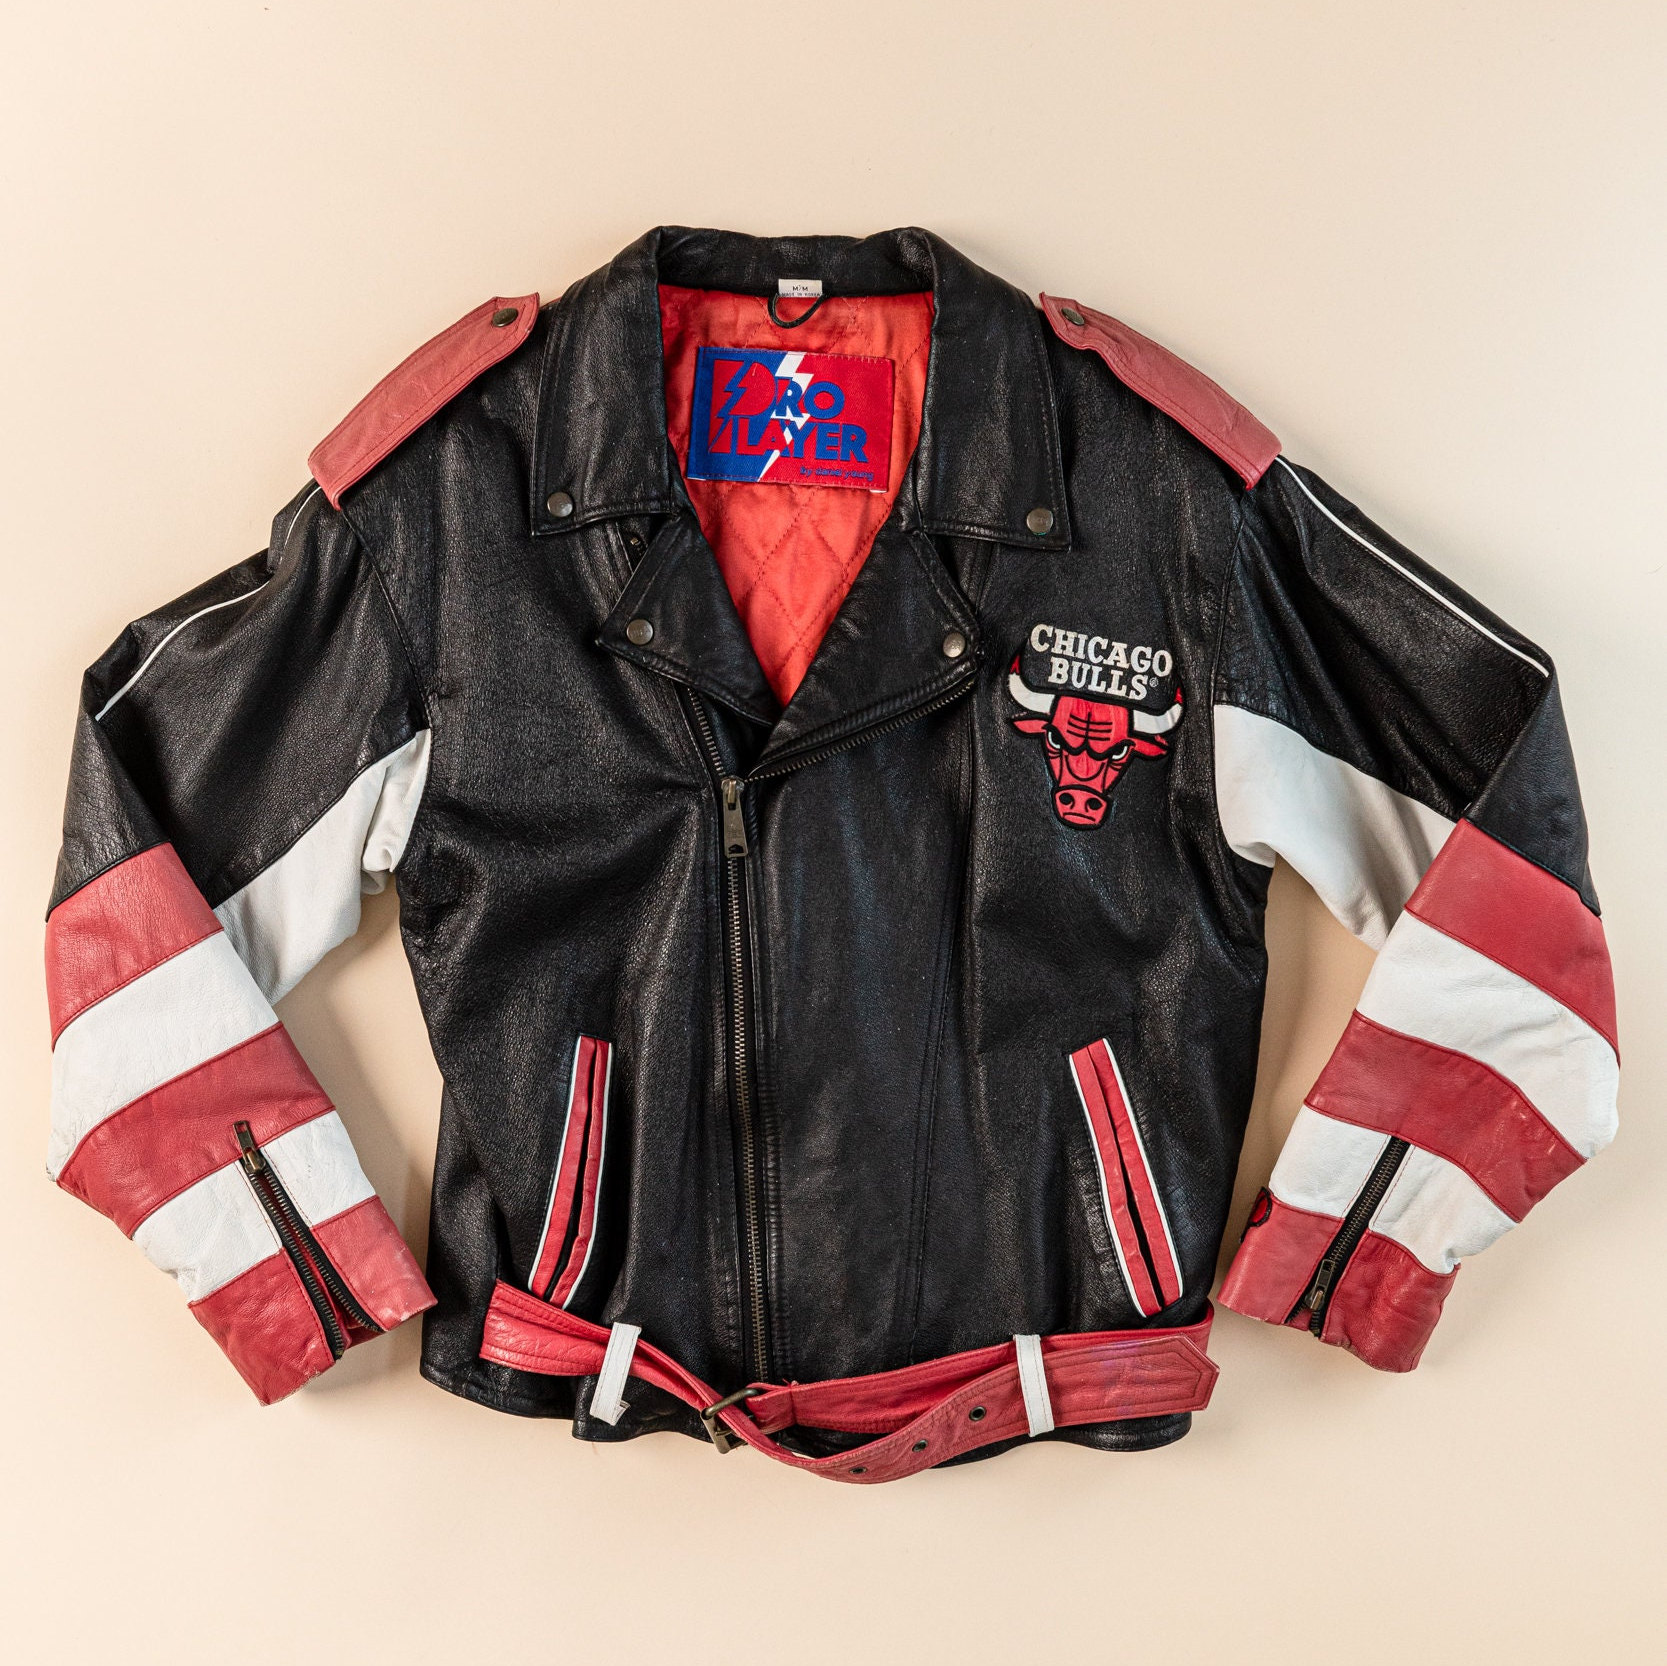 Maker of Jacket Black Leather Jackets Vintage Michael Jordan NBA Charlotte Hornets